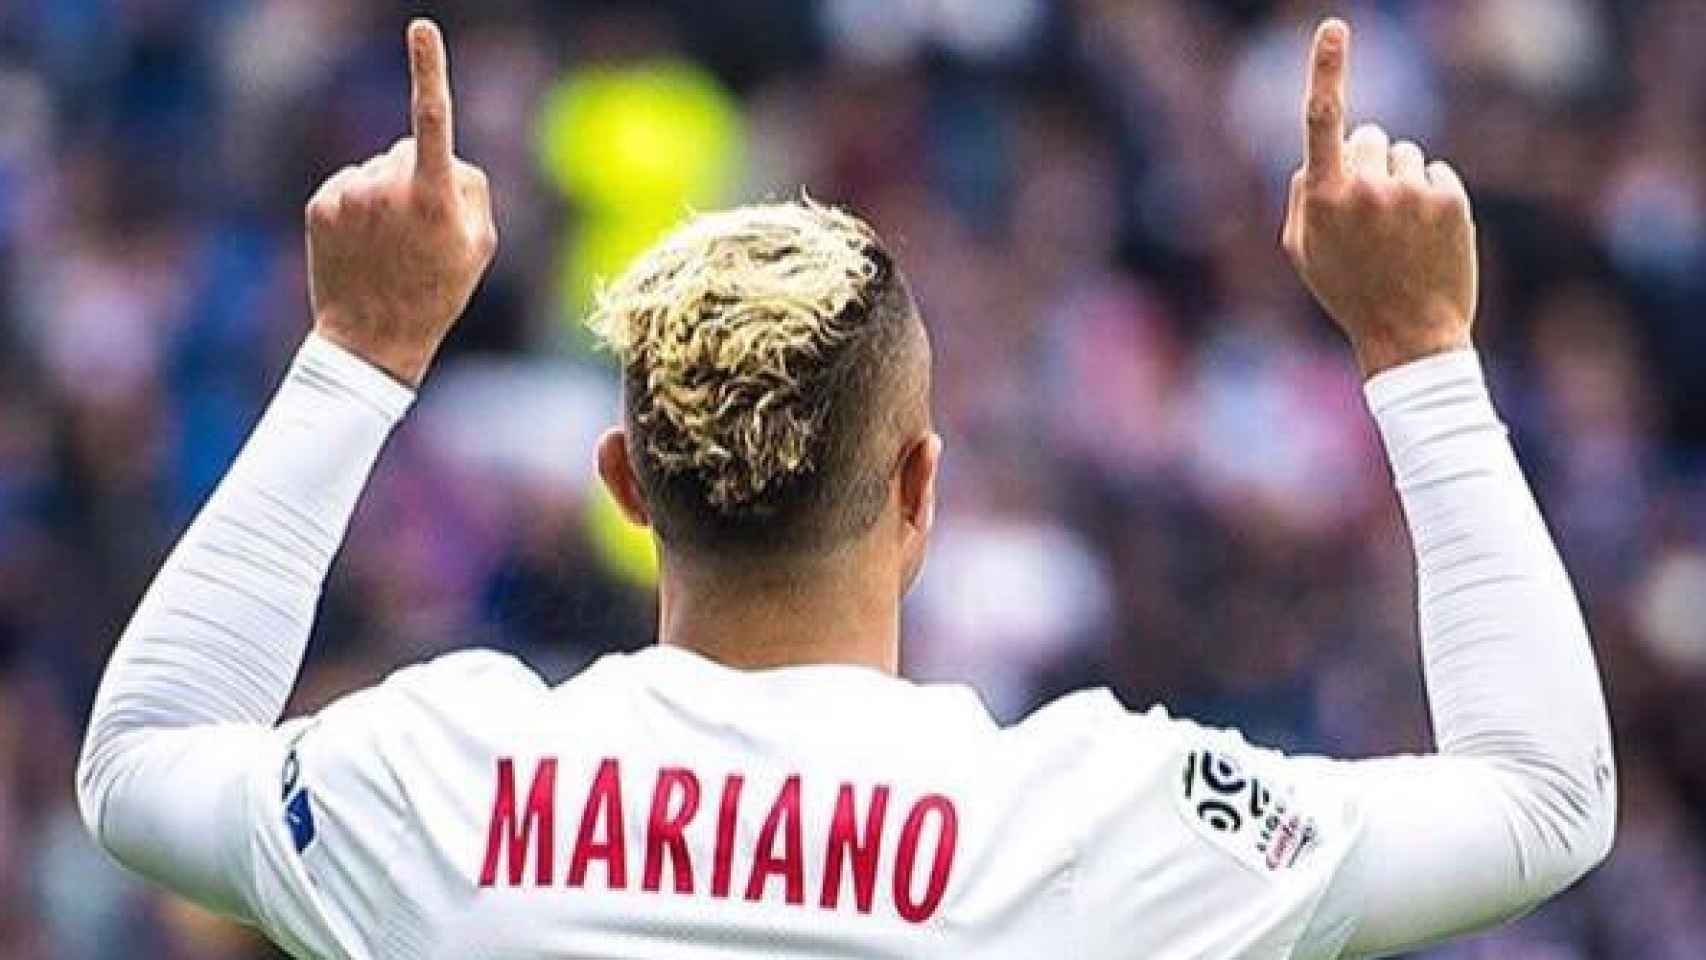 Mariano celebra un gol con el Olympique de Lyon. Foto: Twitter (@marianodiaz9)